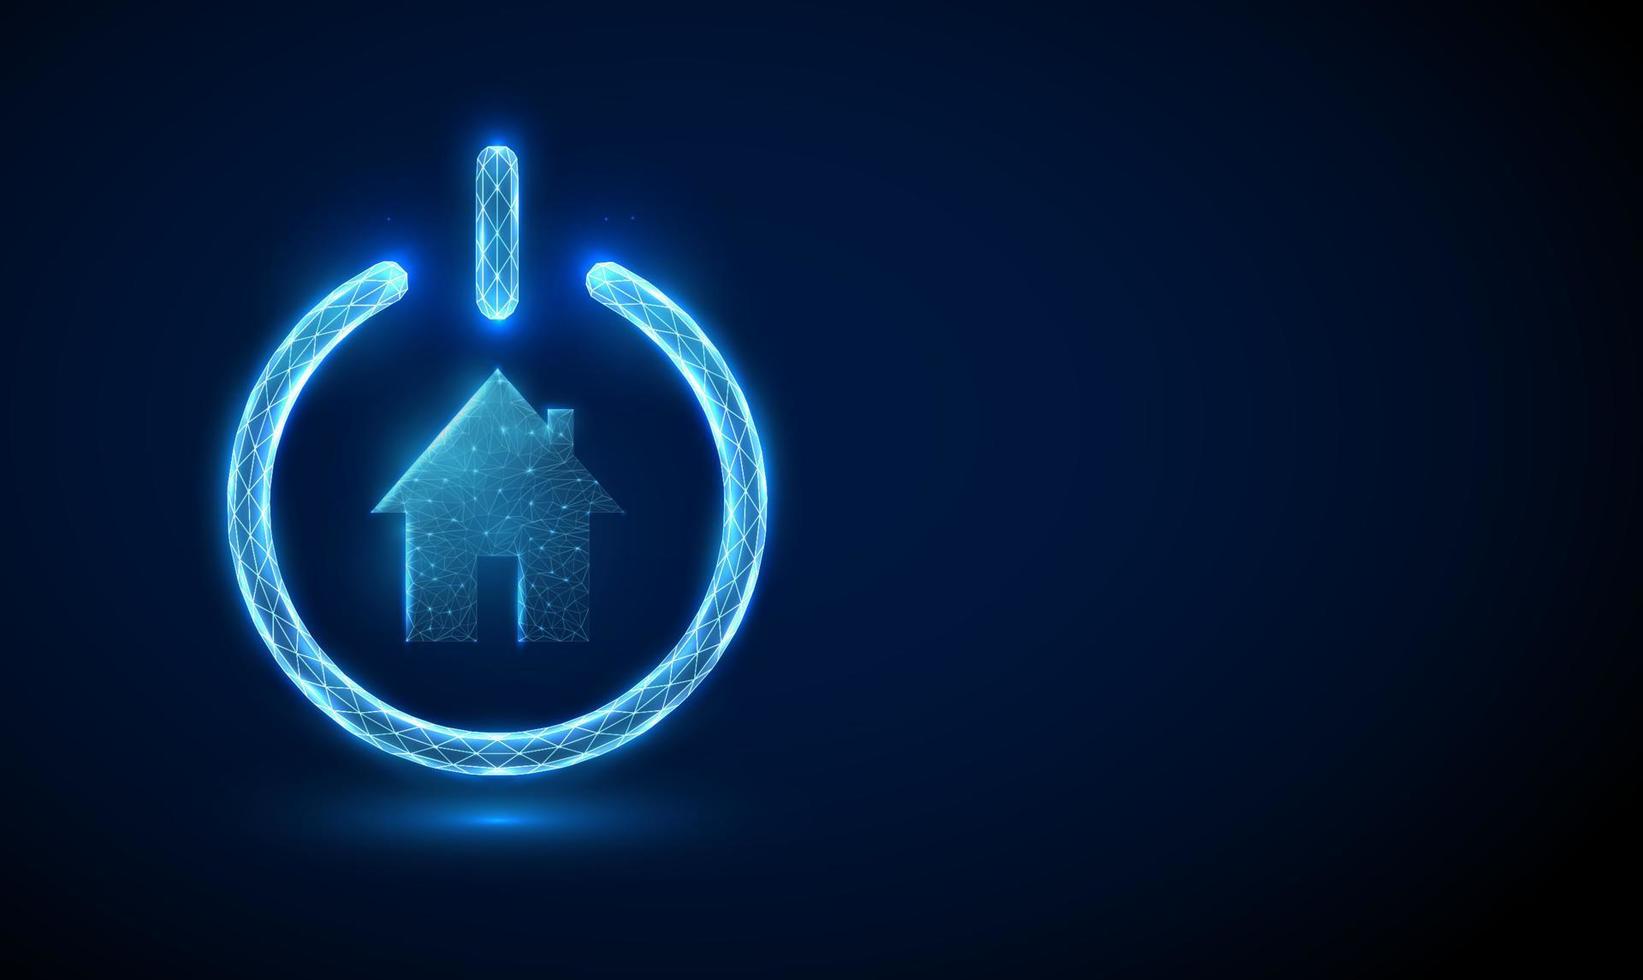 abstract blauw gloeiend huispictogram in aan / uit-knop vector